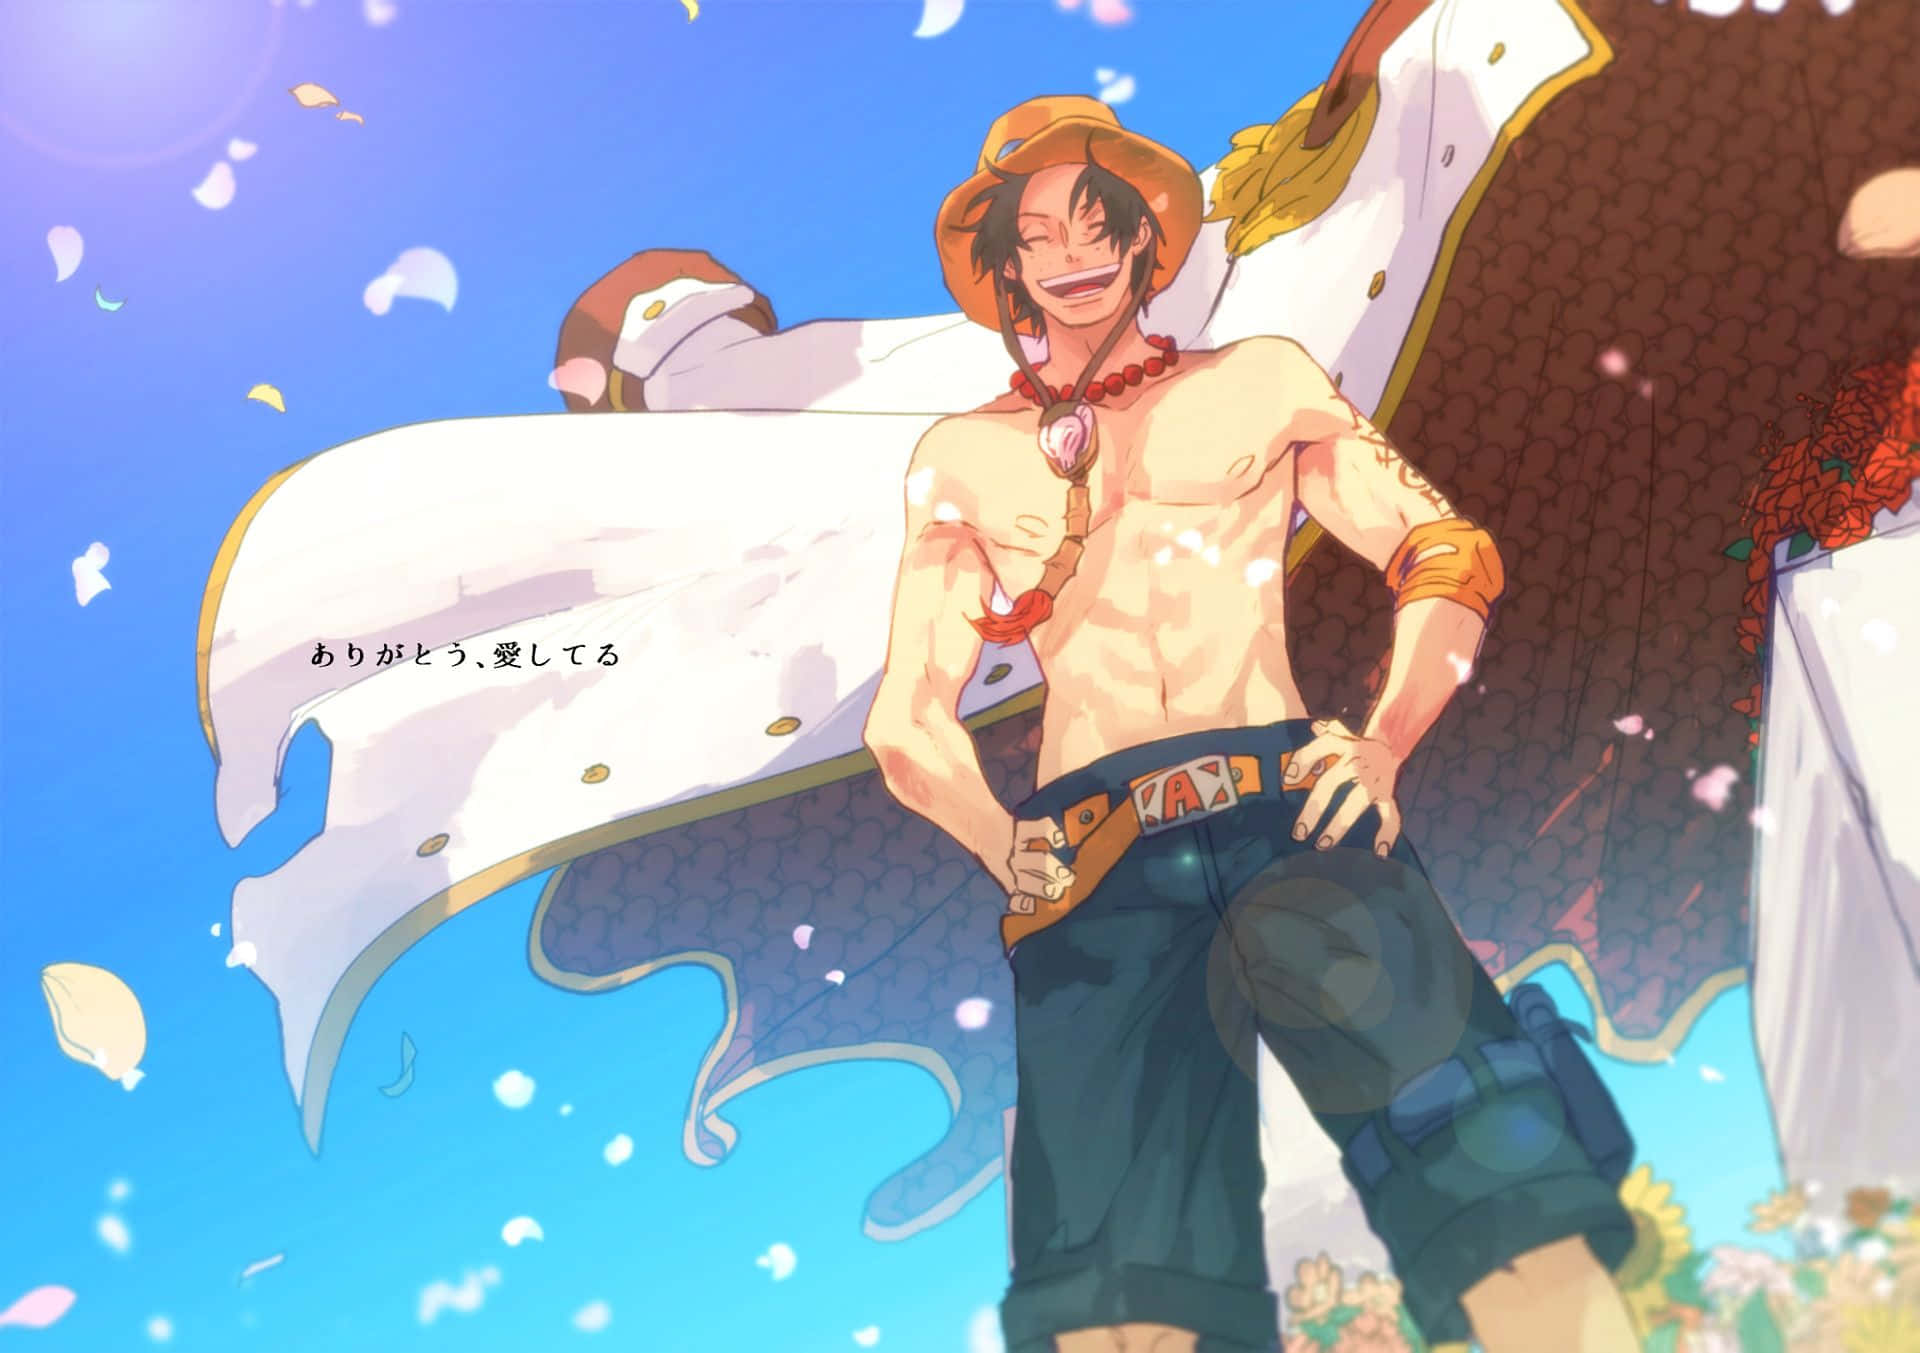 Hintergrundbildvon One Piece